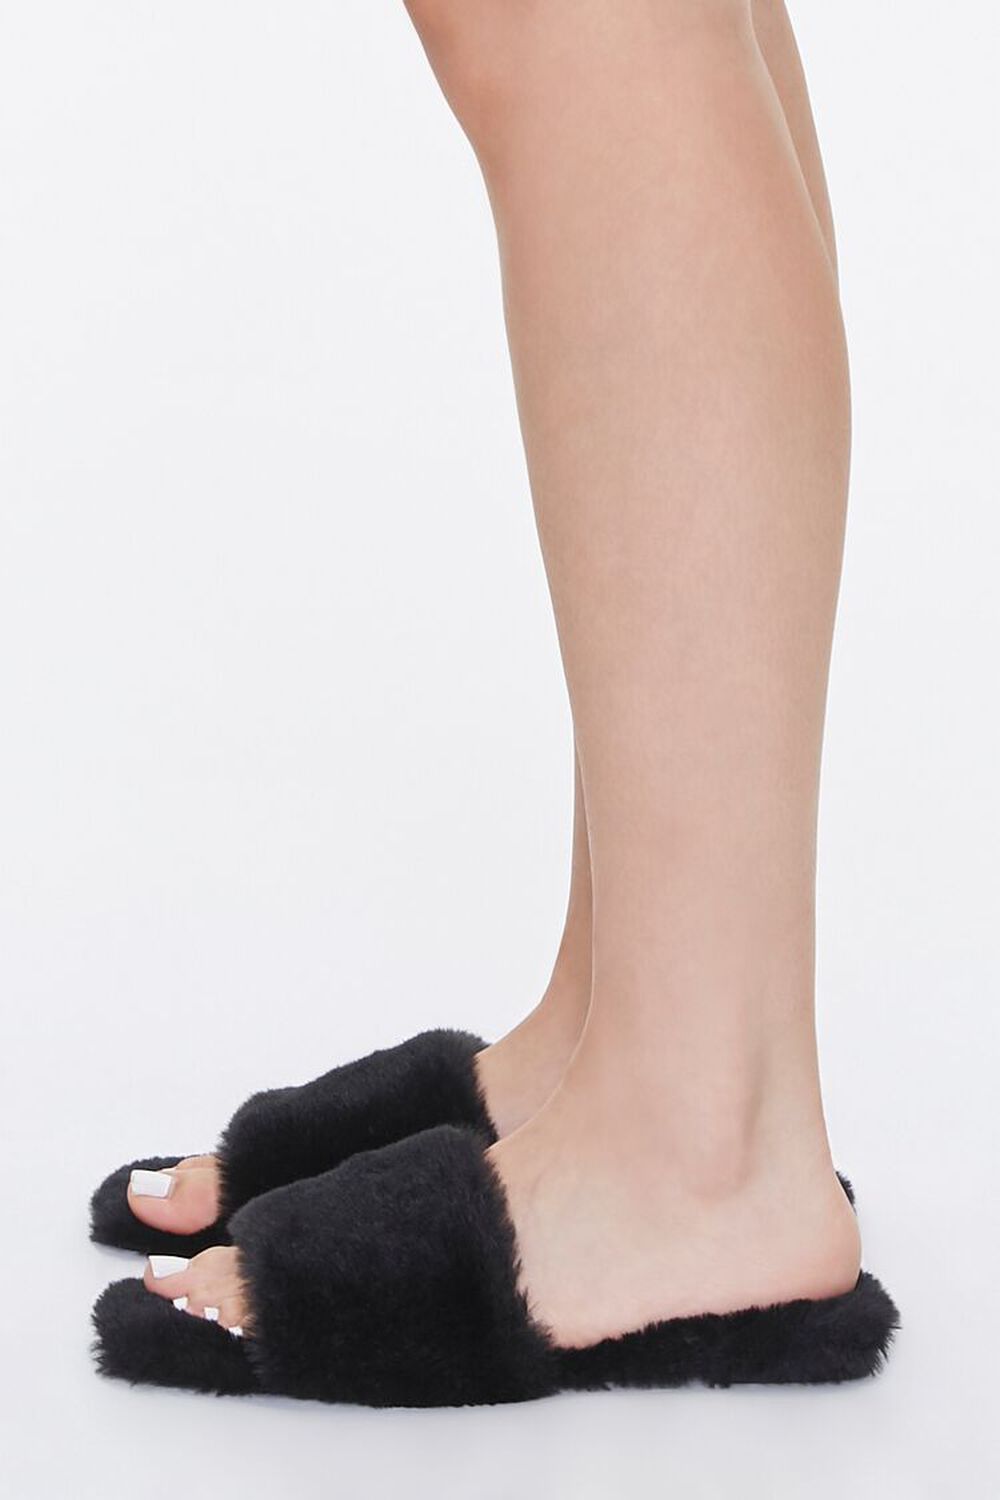 BLACK Faux Fur Open-Toe Slippers, image 2